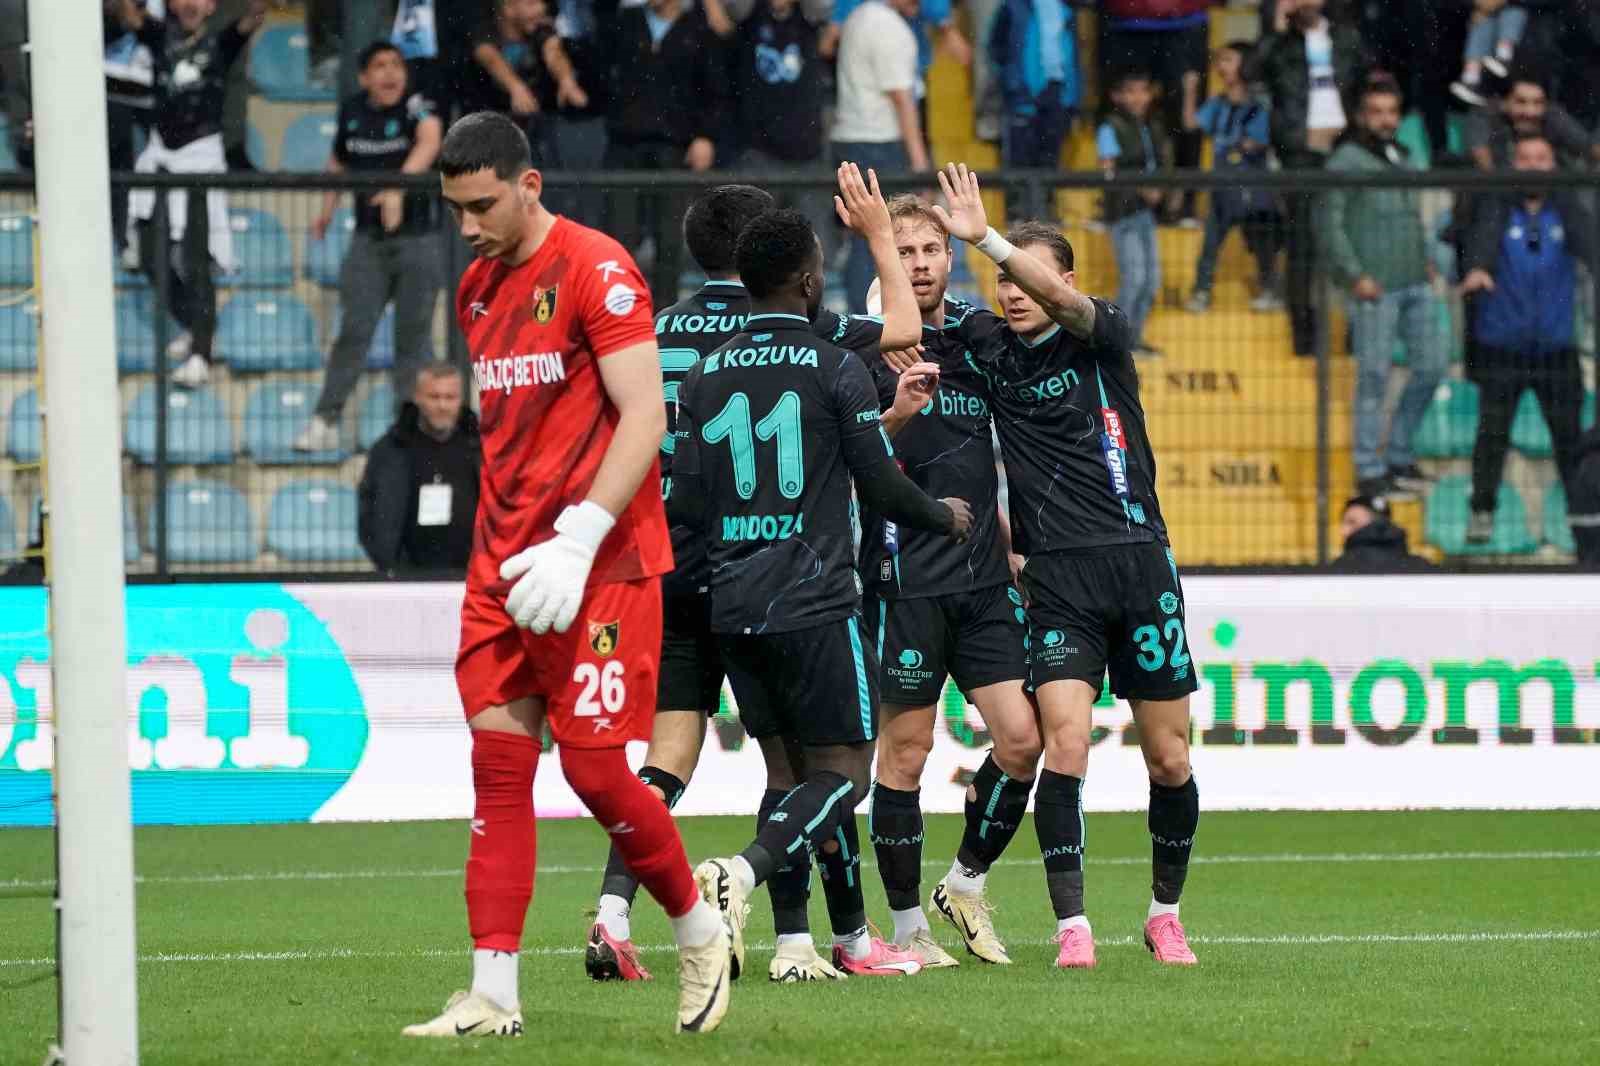 Trendyol Süper Lig: İstanbulspor: 0 - Adana Demirspor: 1 (Maç devam ediyor)
